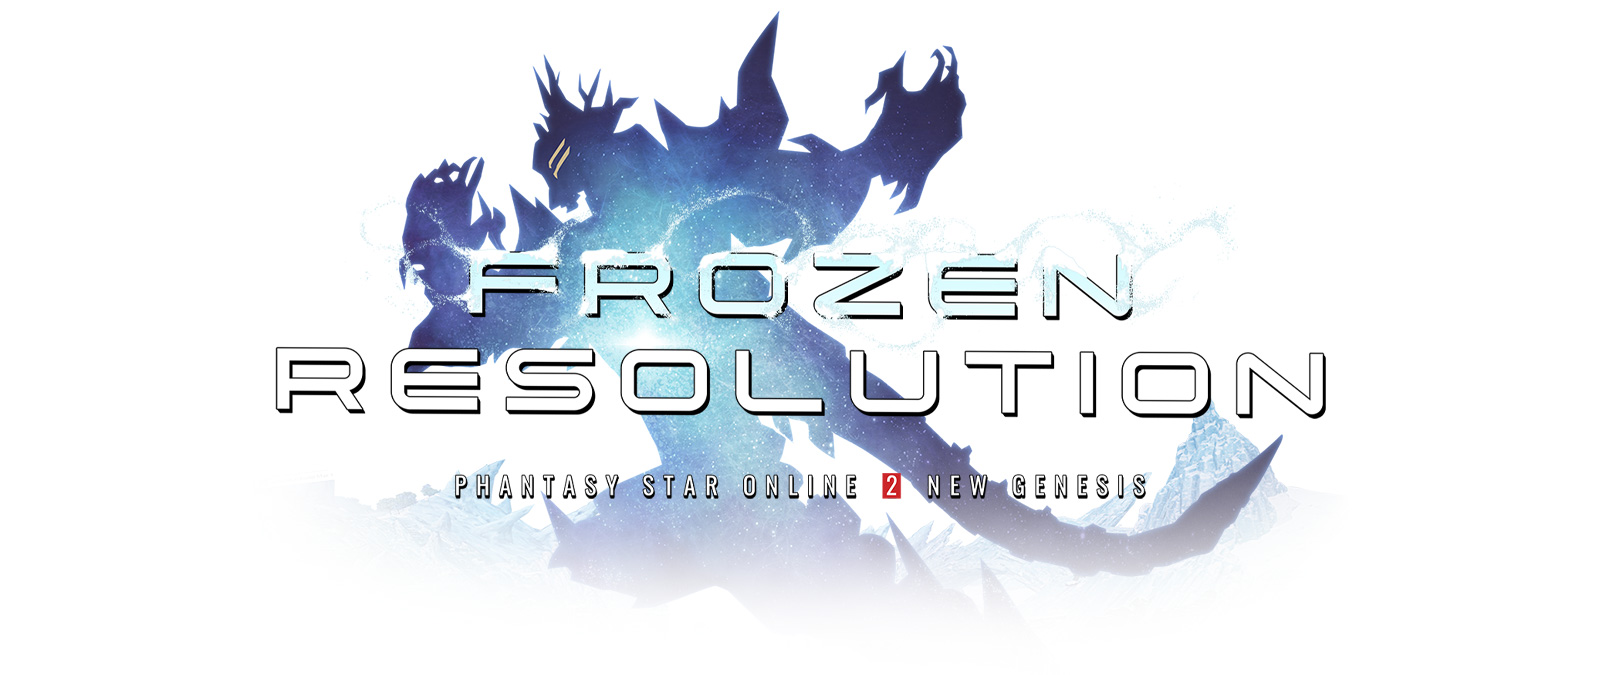 Frozen Resolution, Phantasy Star Online 2 New Genesis, haarniskan ääriviivat ovat huurteiset.